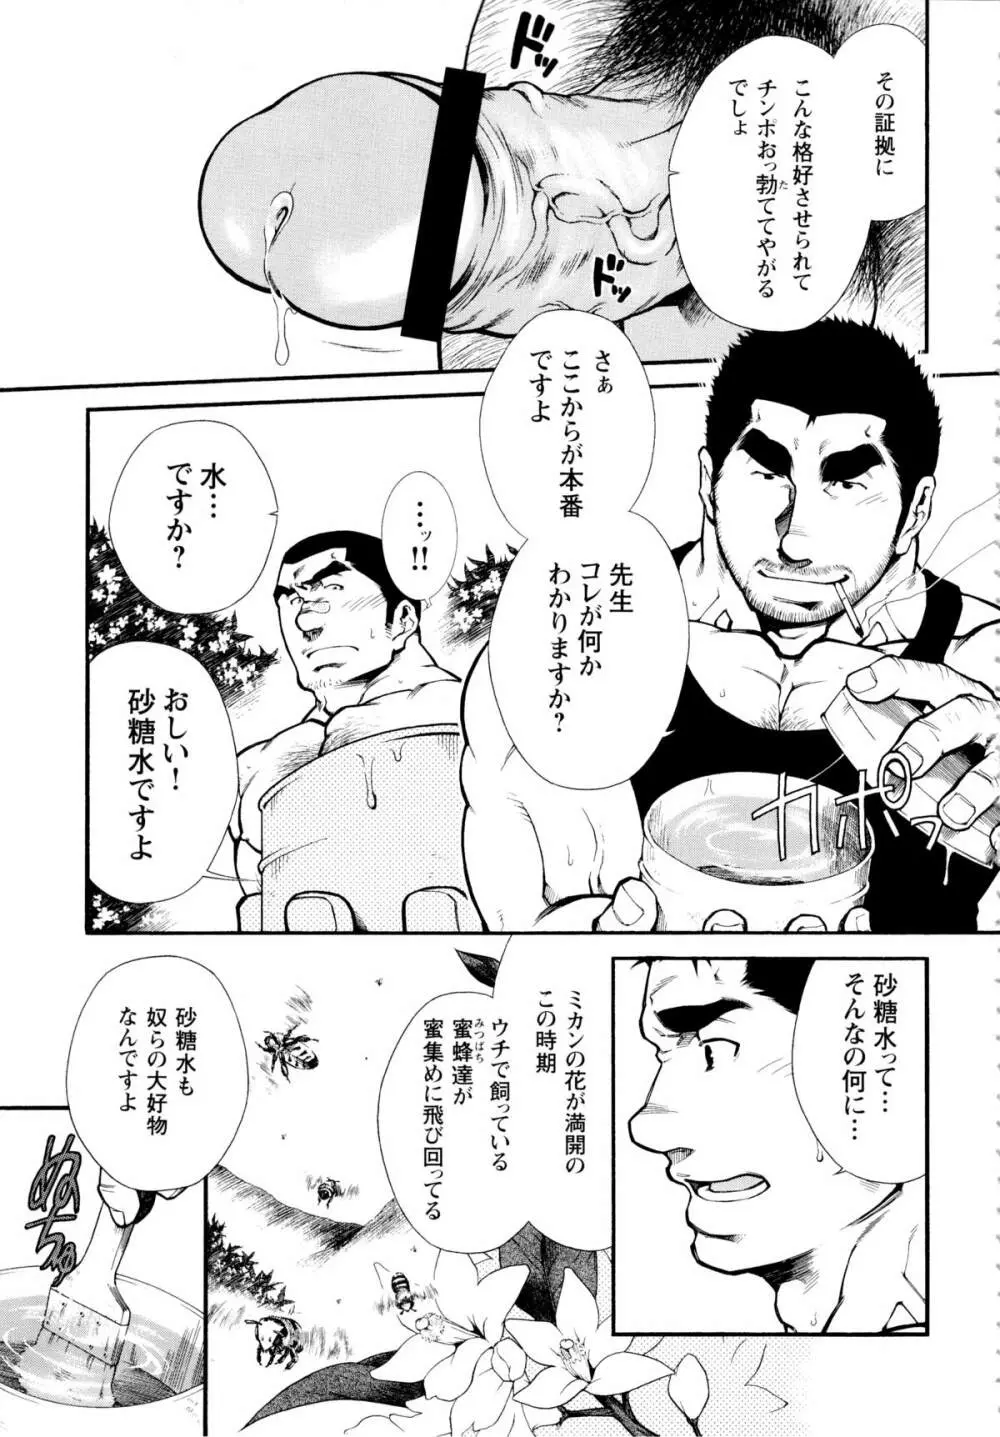 Osu Hachi no Mitsu – by -晃次郎 (Terujirou) 7ページ